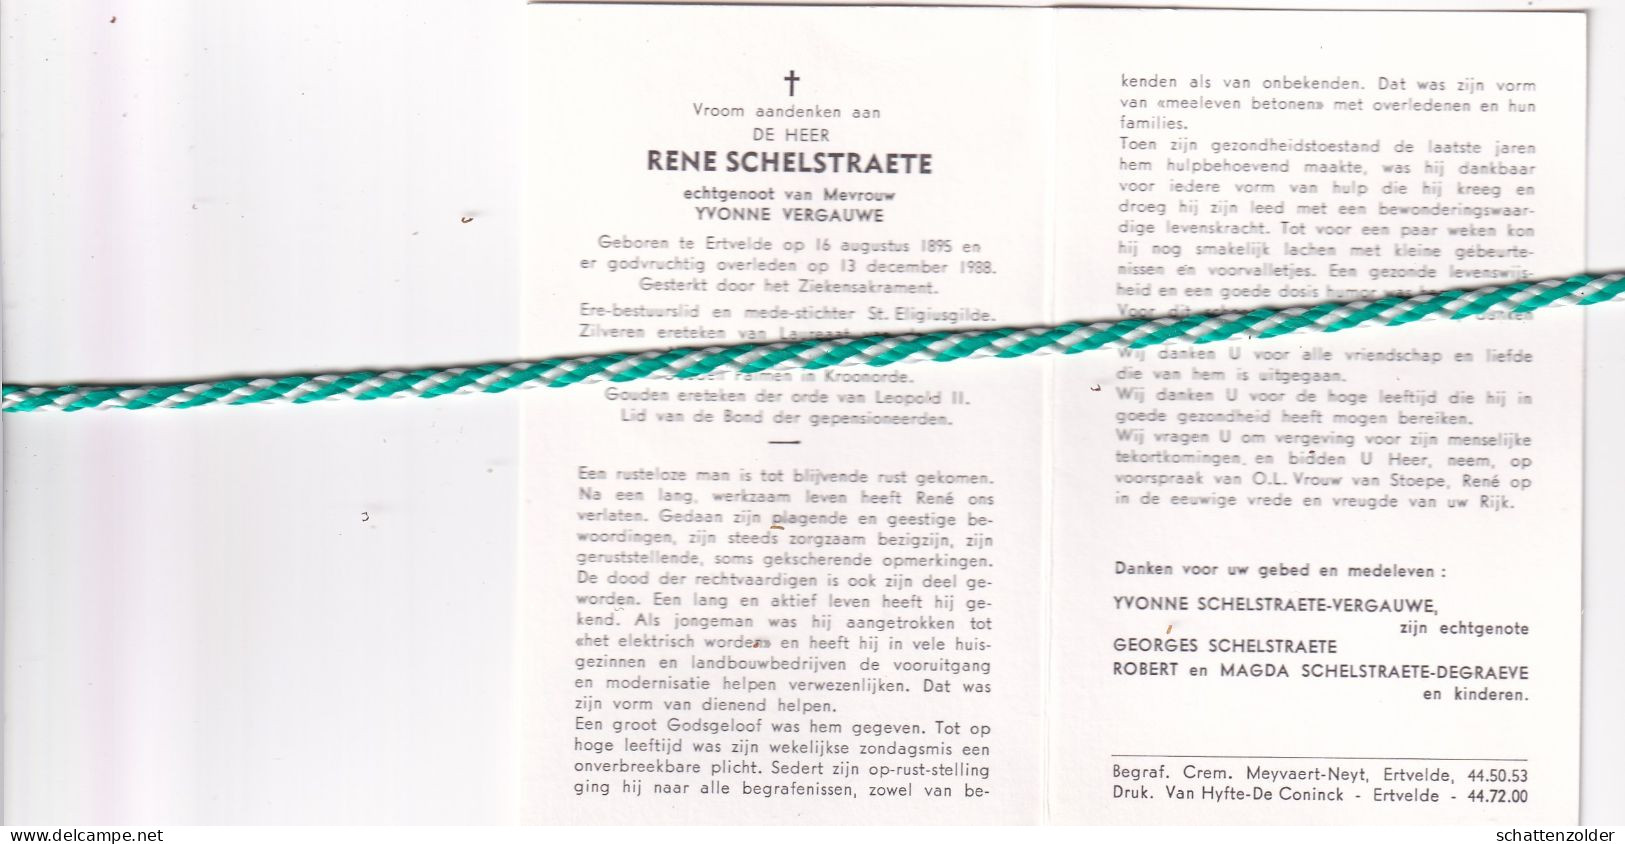 Rene Schelstraete-Vergauwe, Ertvelde 1895, 1988 - Overlijden